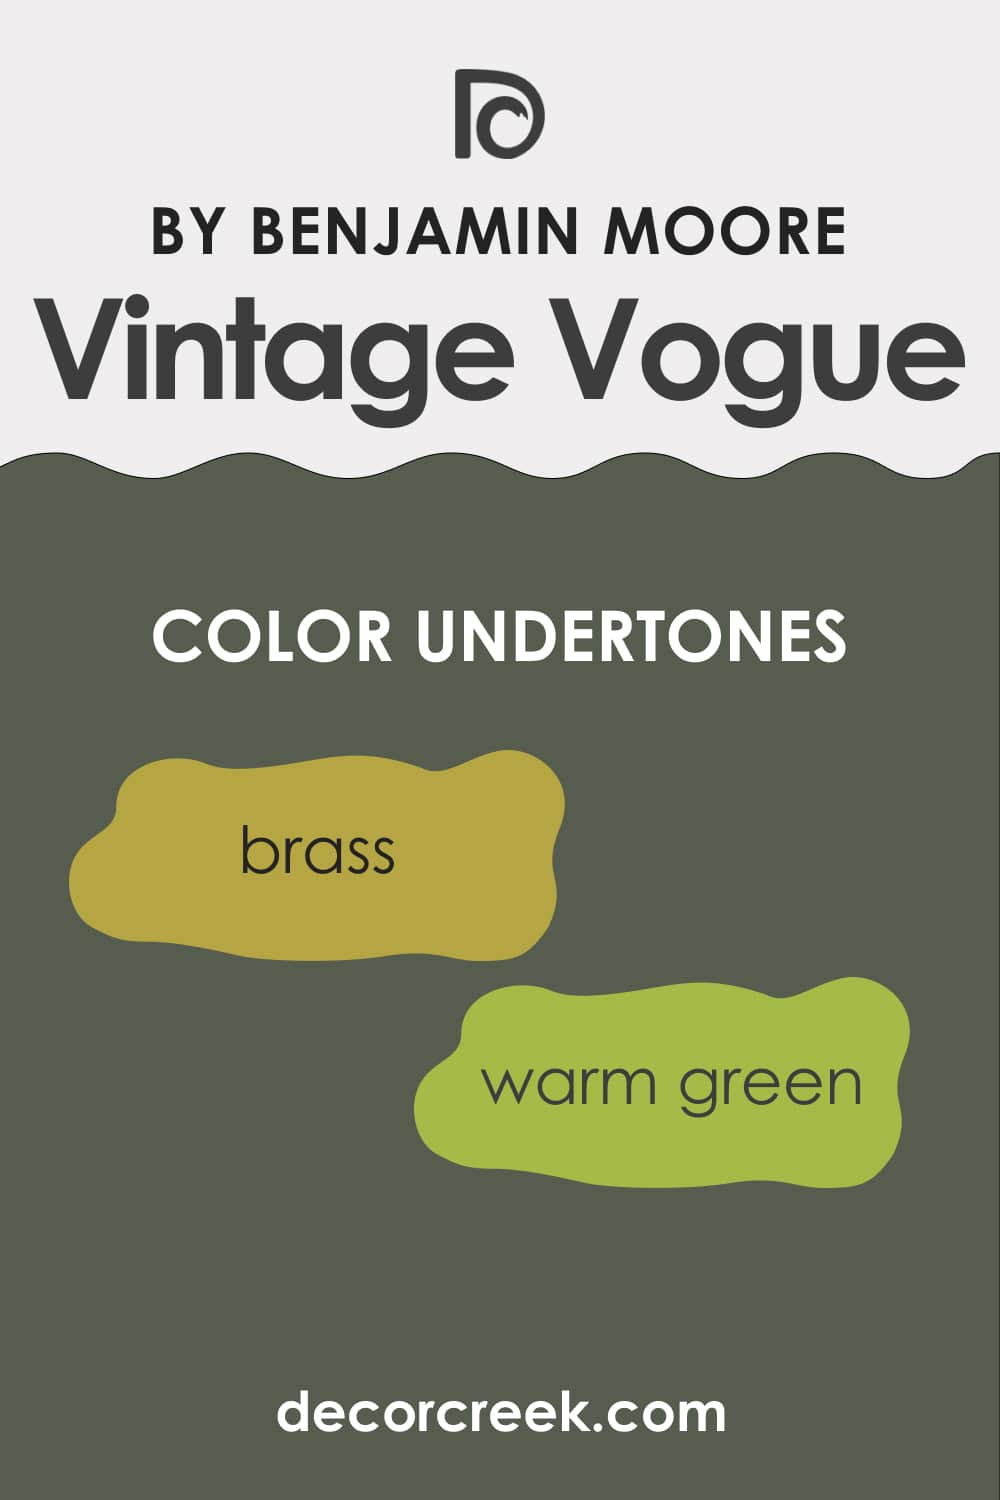 What Undertones Does Vintage Vogue 462 Paint Color Have?